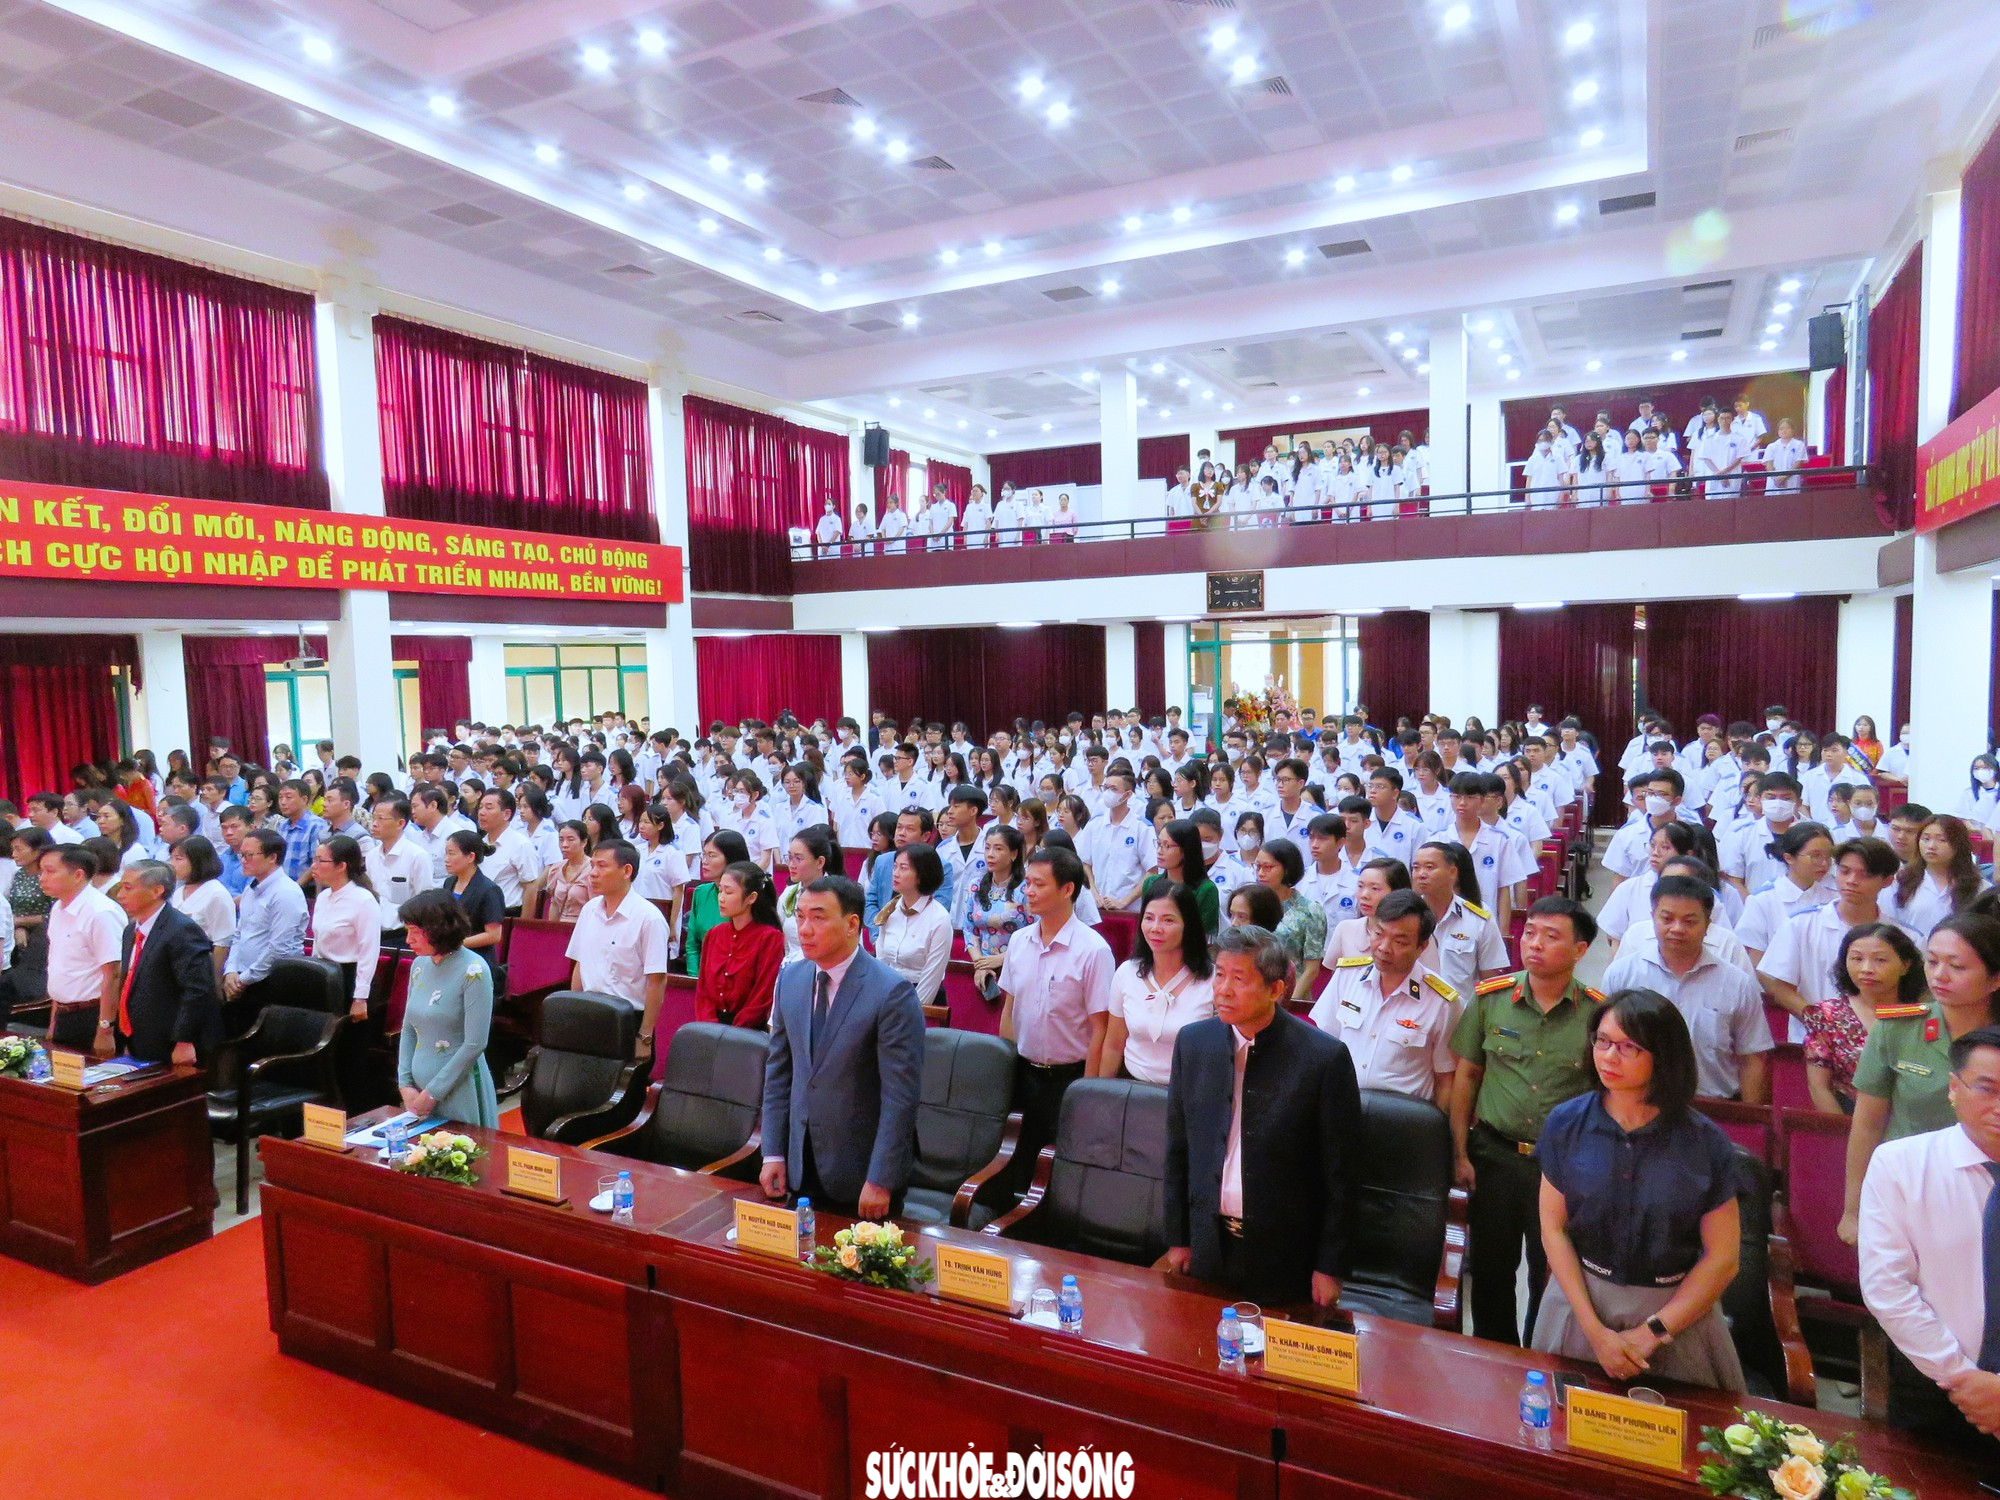 Xúc động lễ khai giảng của sinh viên trường ĐH Y dược Hải Phòng - Ảnh 1.